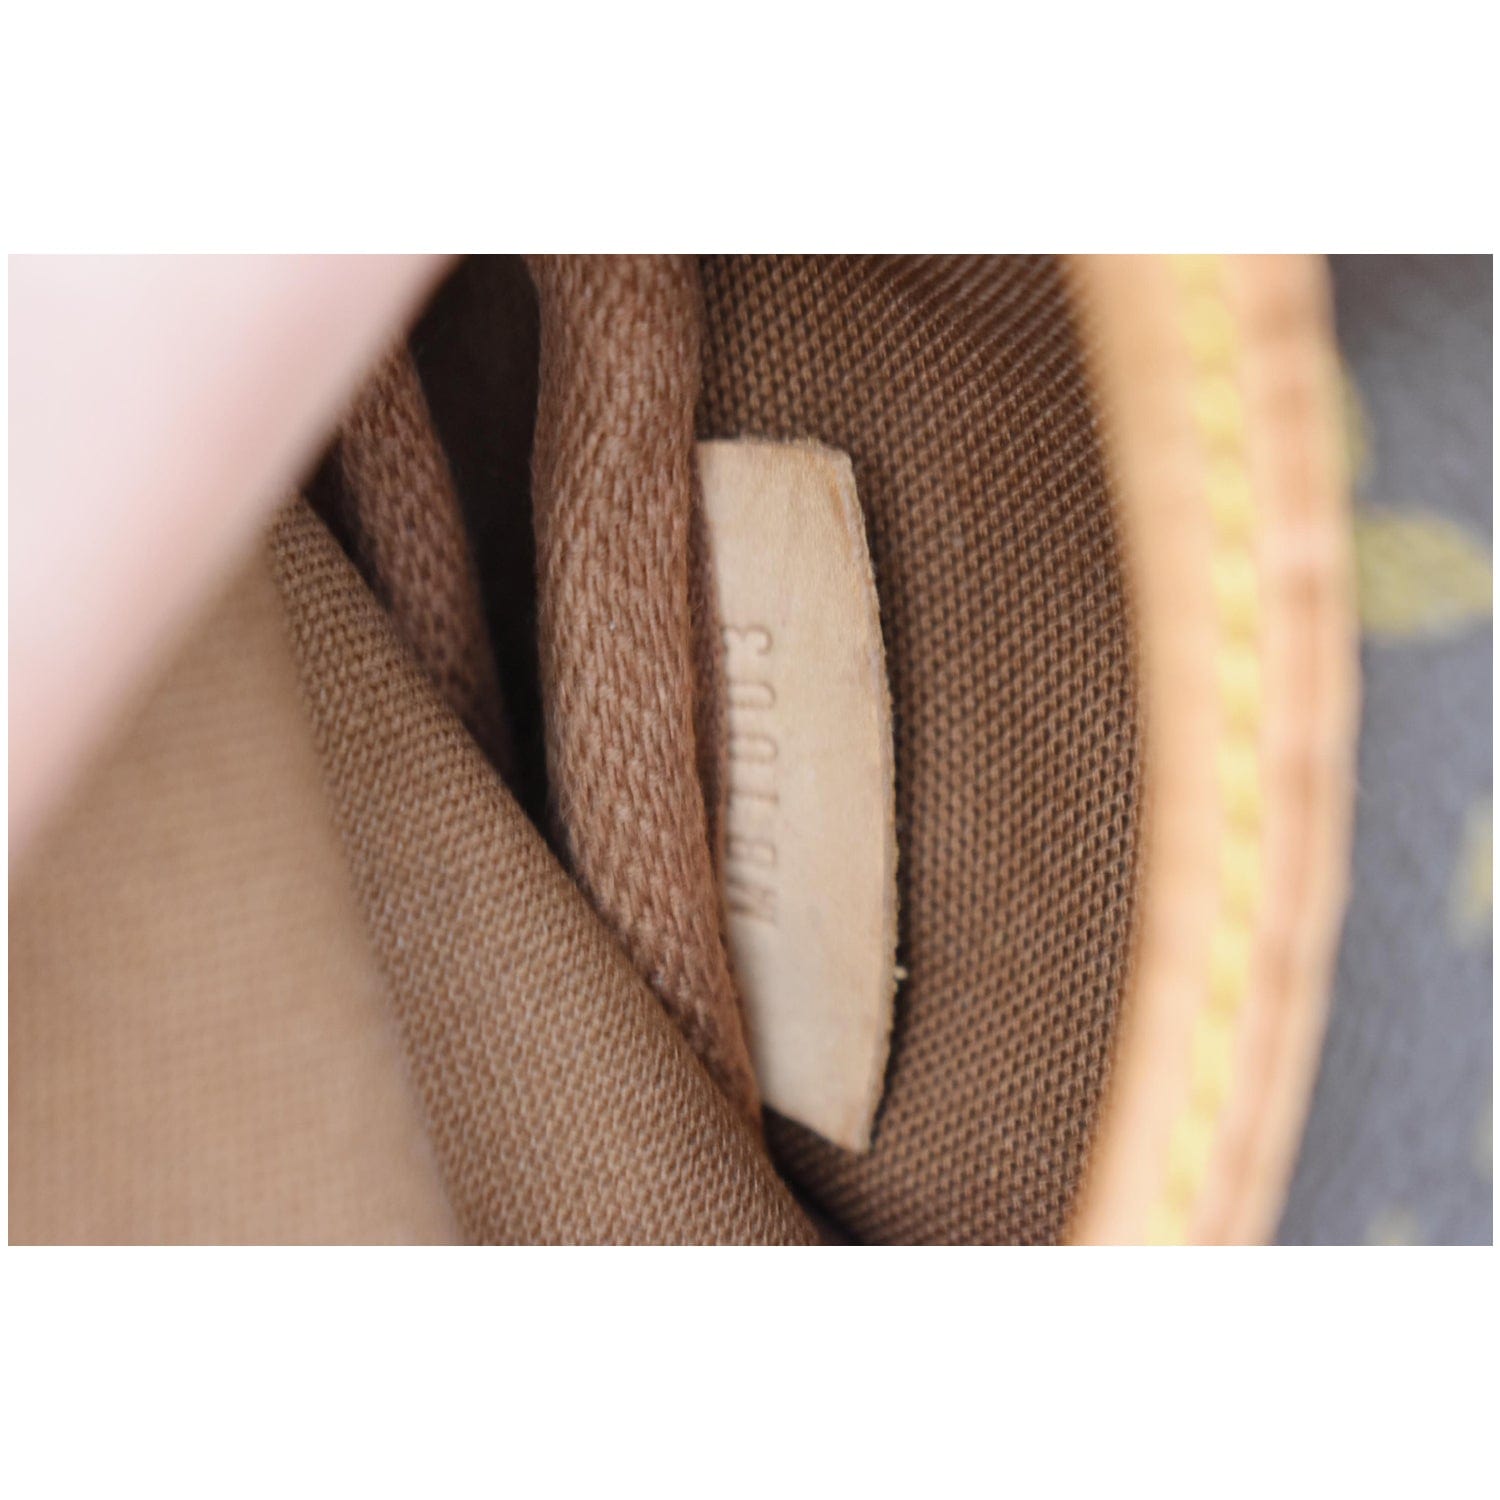 Brown Louis Vuitton Monogram Saumur 30 Crossbody Bag – Designer Revival